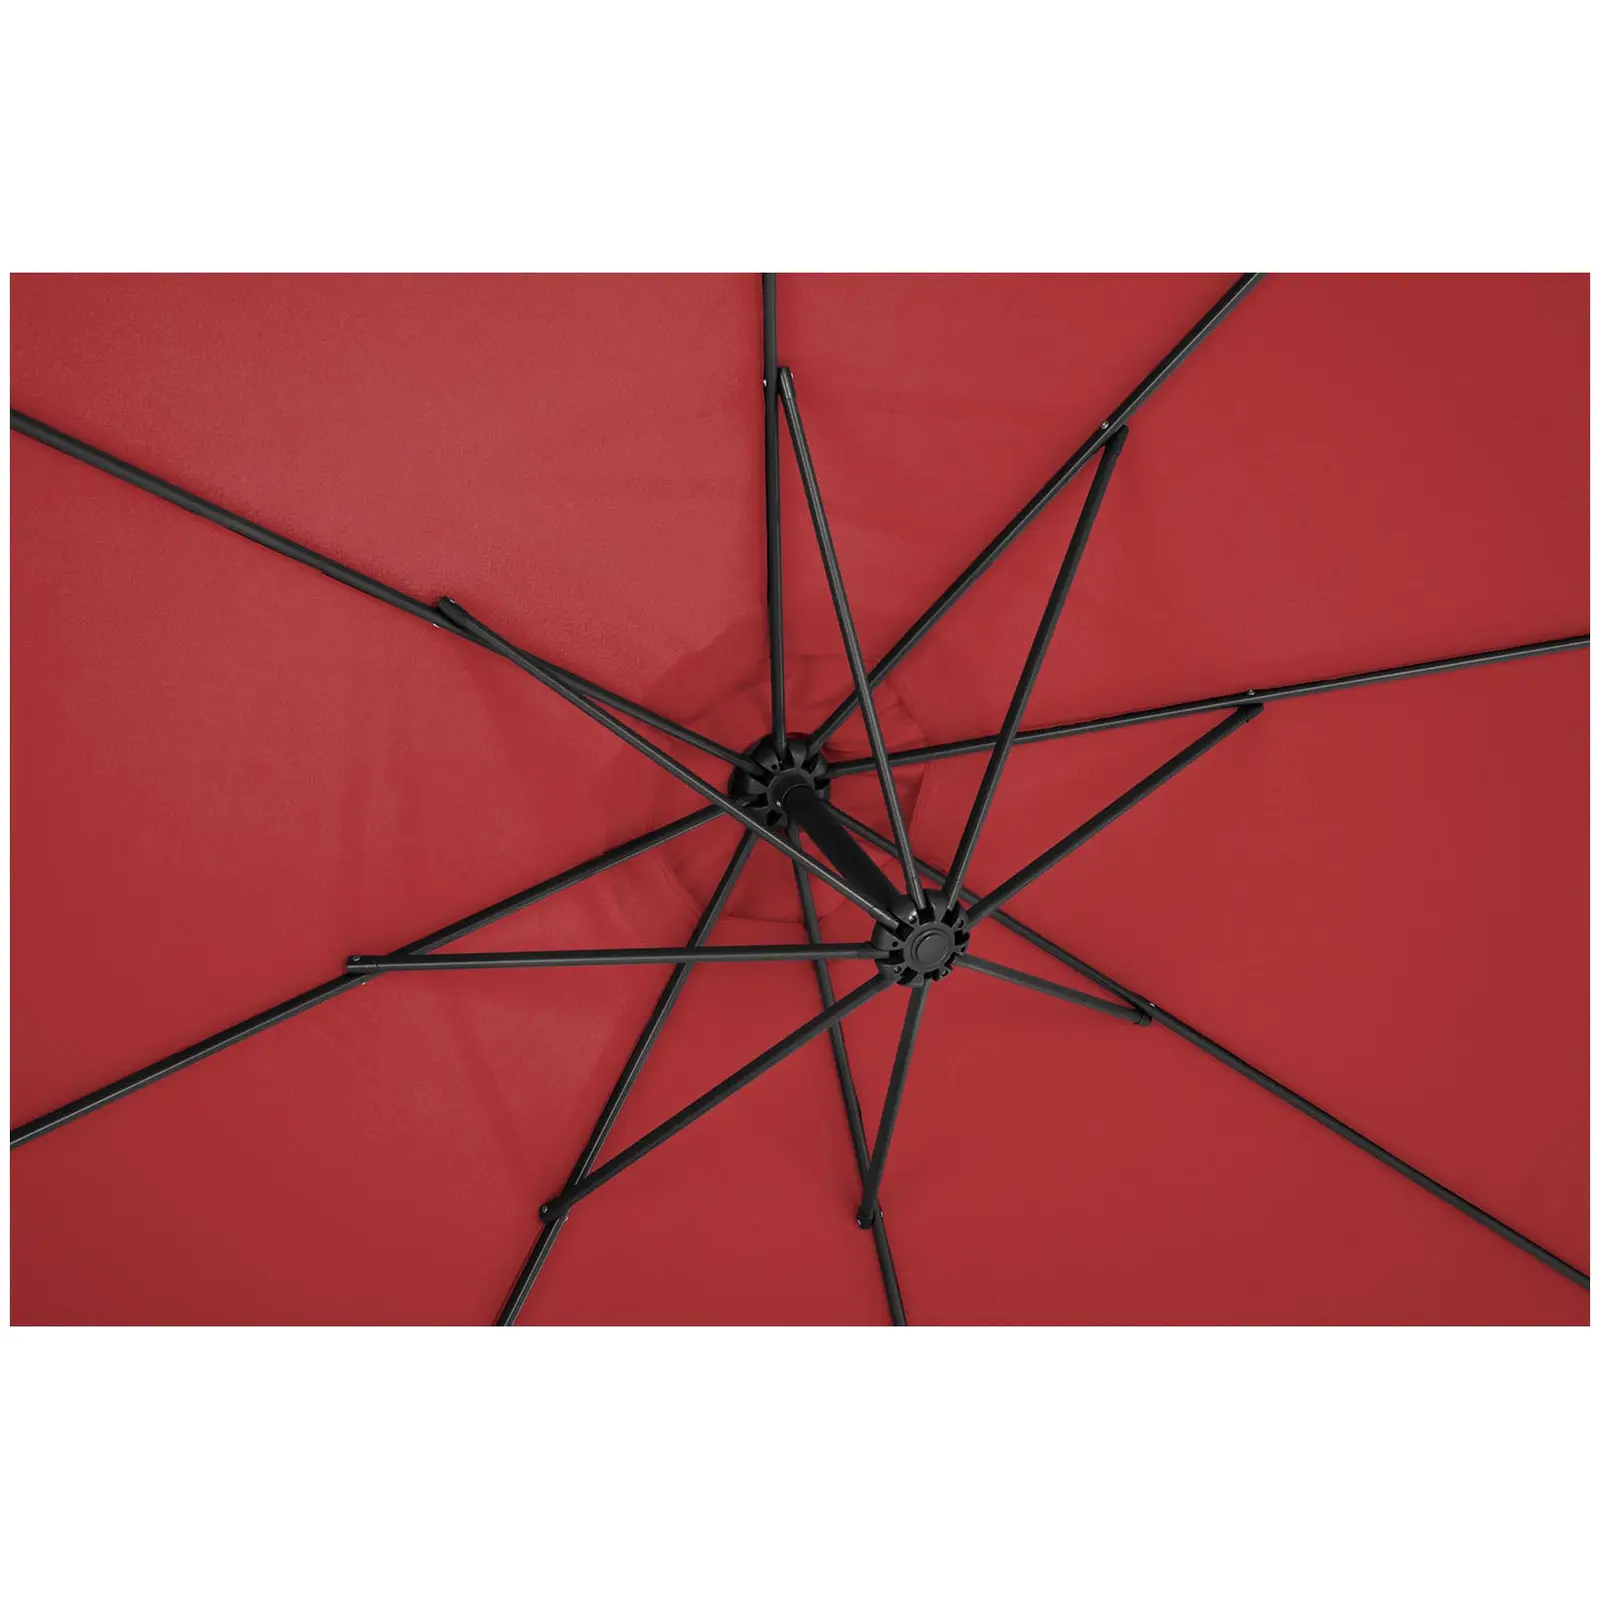 Aurinkovarjo - viininpunainen - pyöreä - Ø 300 cm - kallistettava